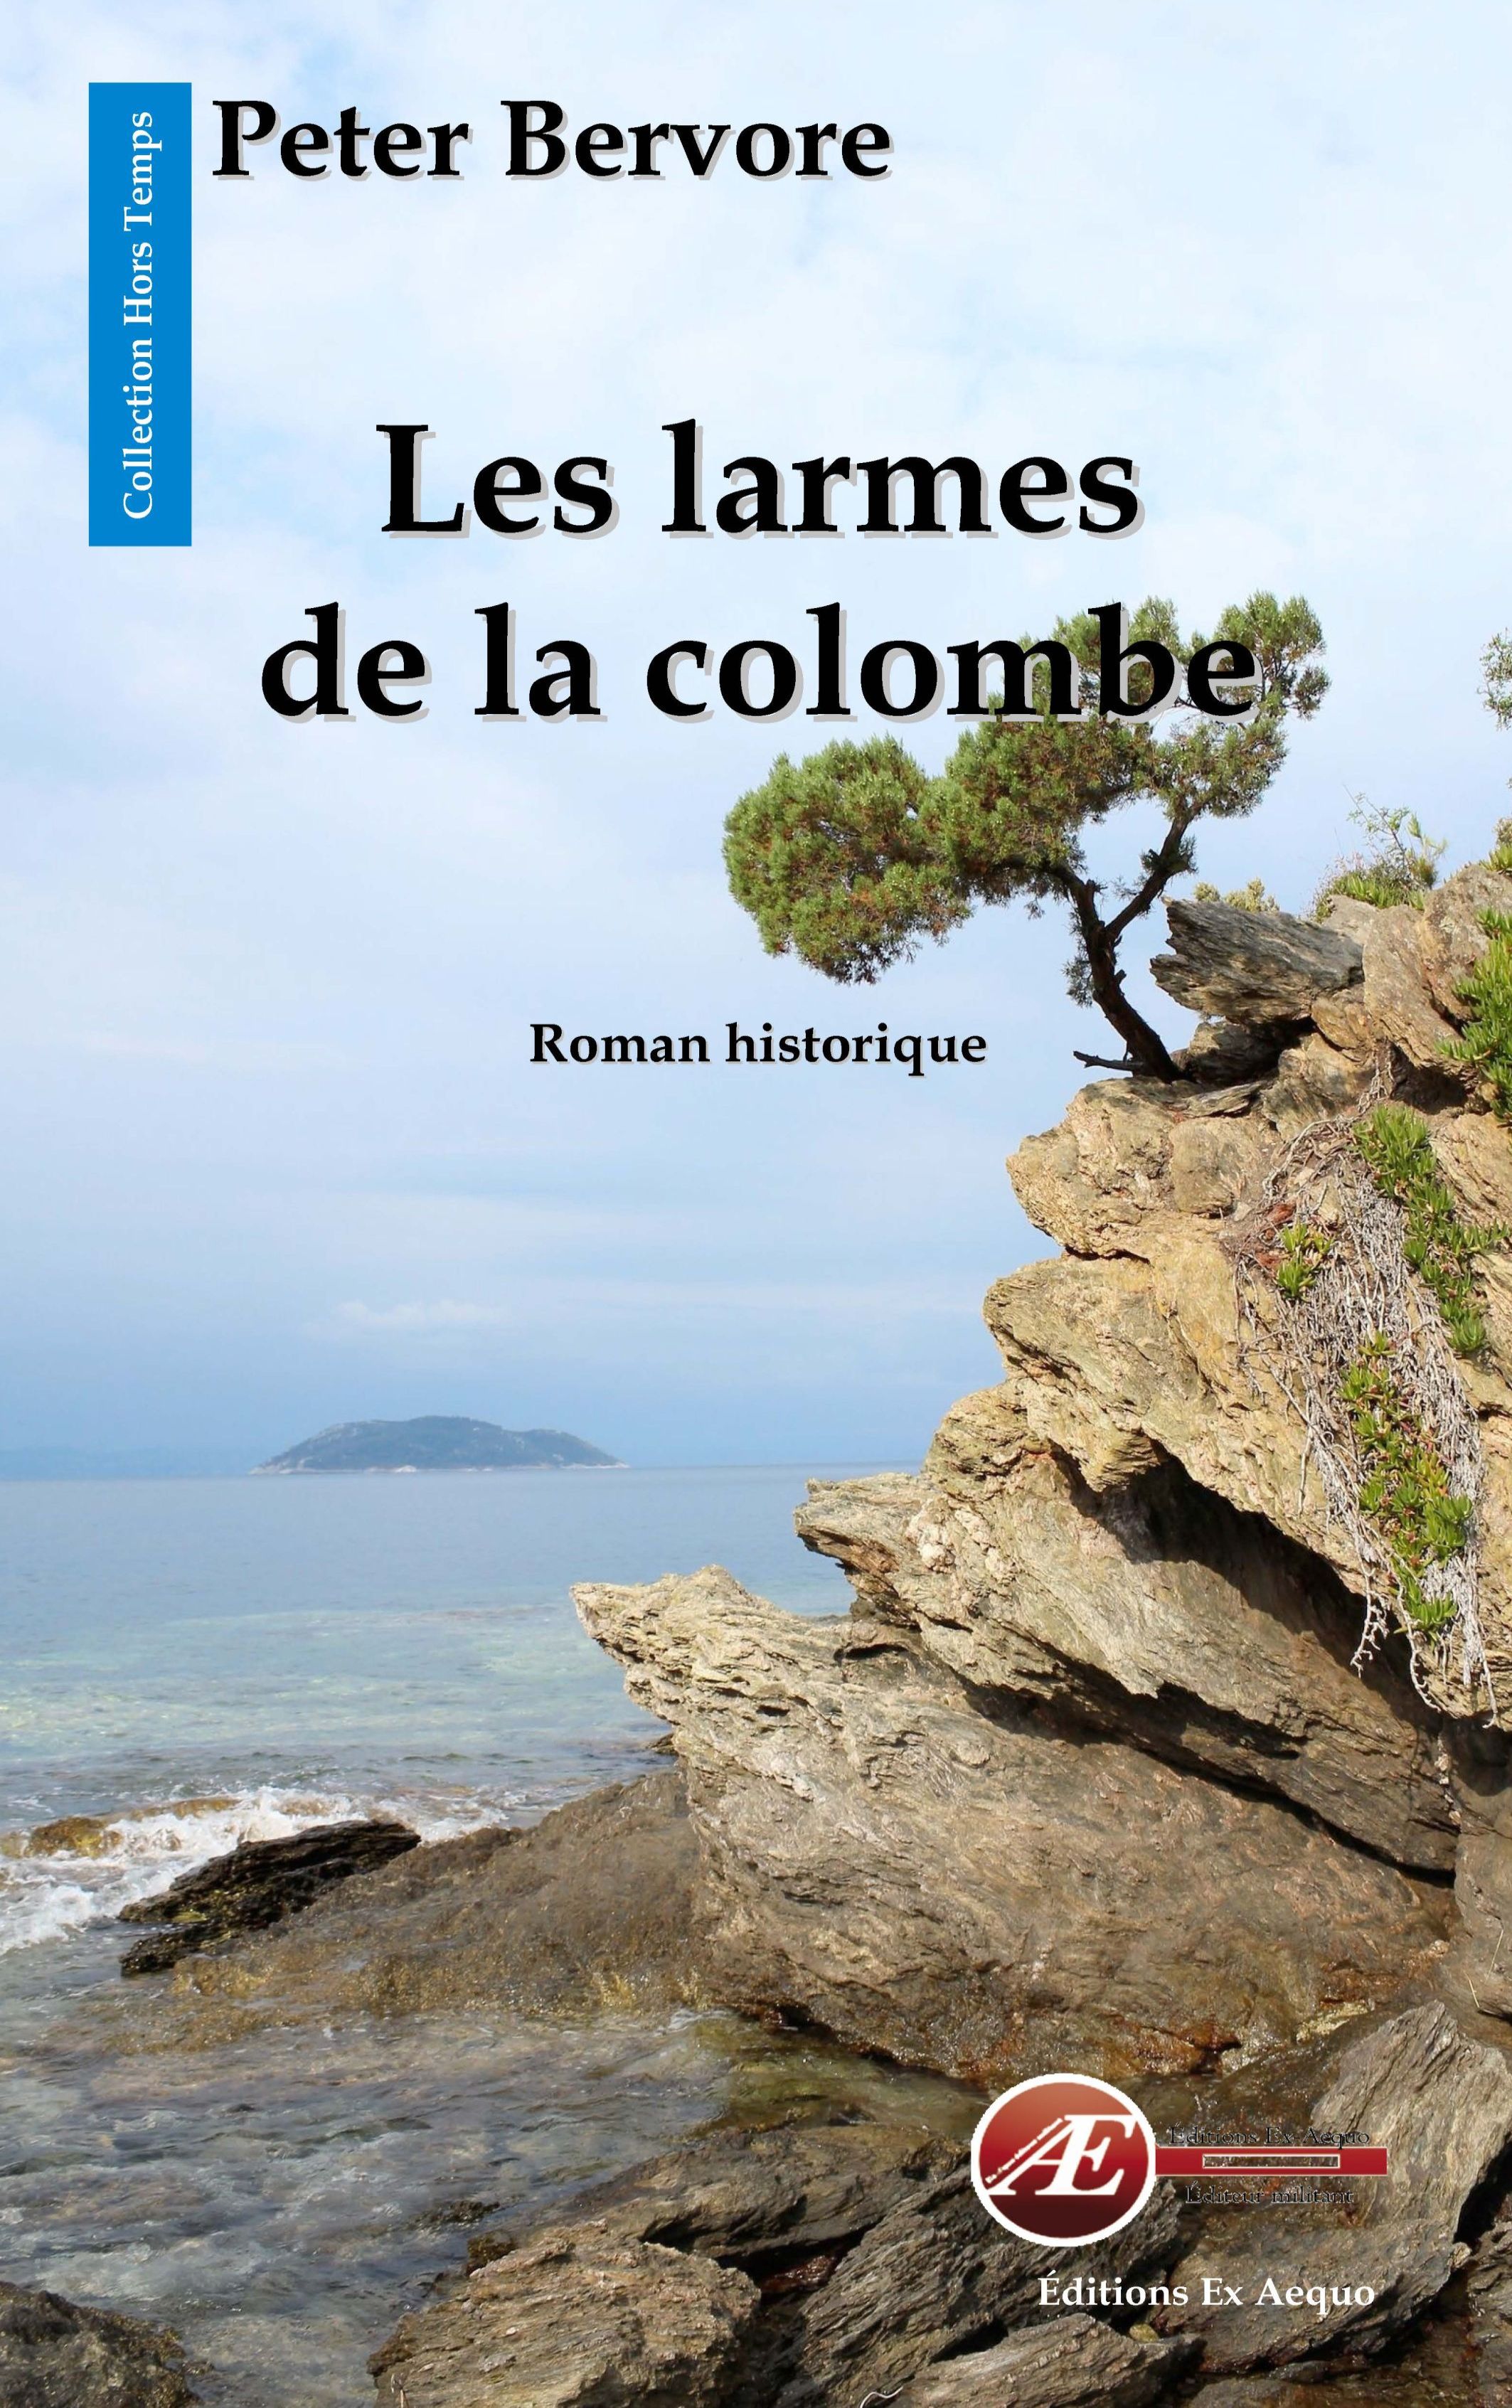 You are currently viewing Les Larmes de la colombe, de Peter Bervore